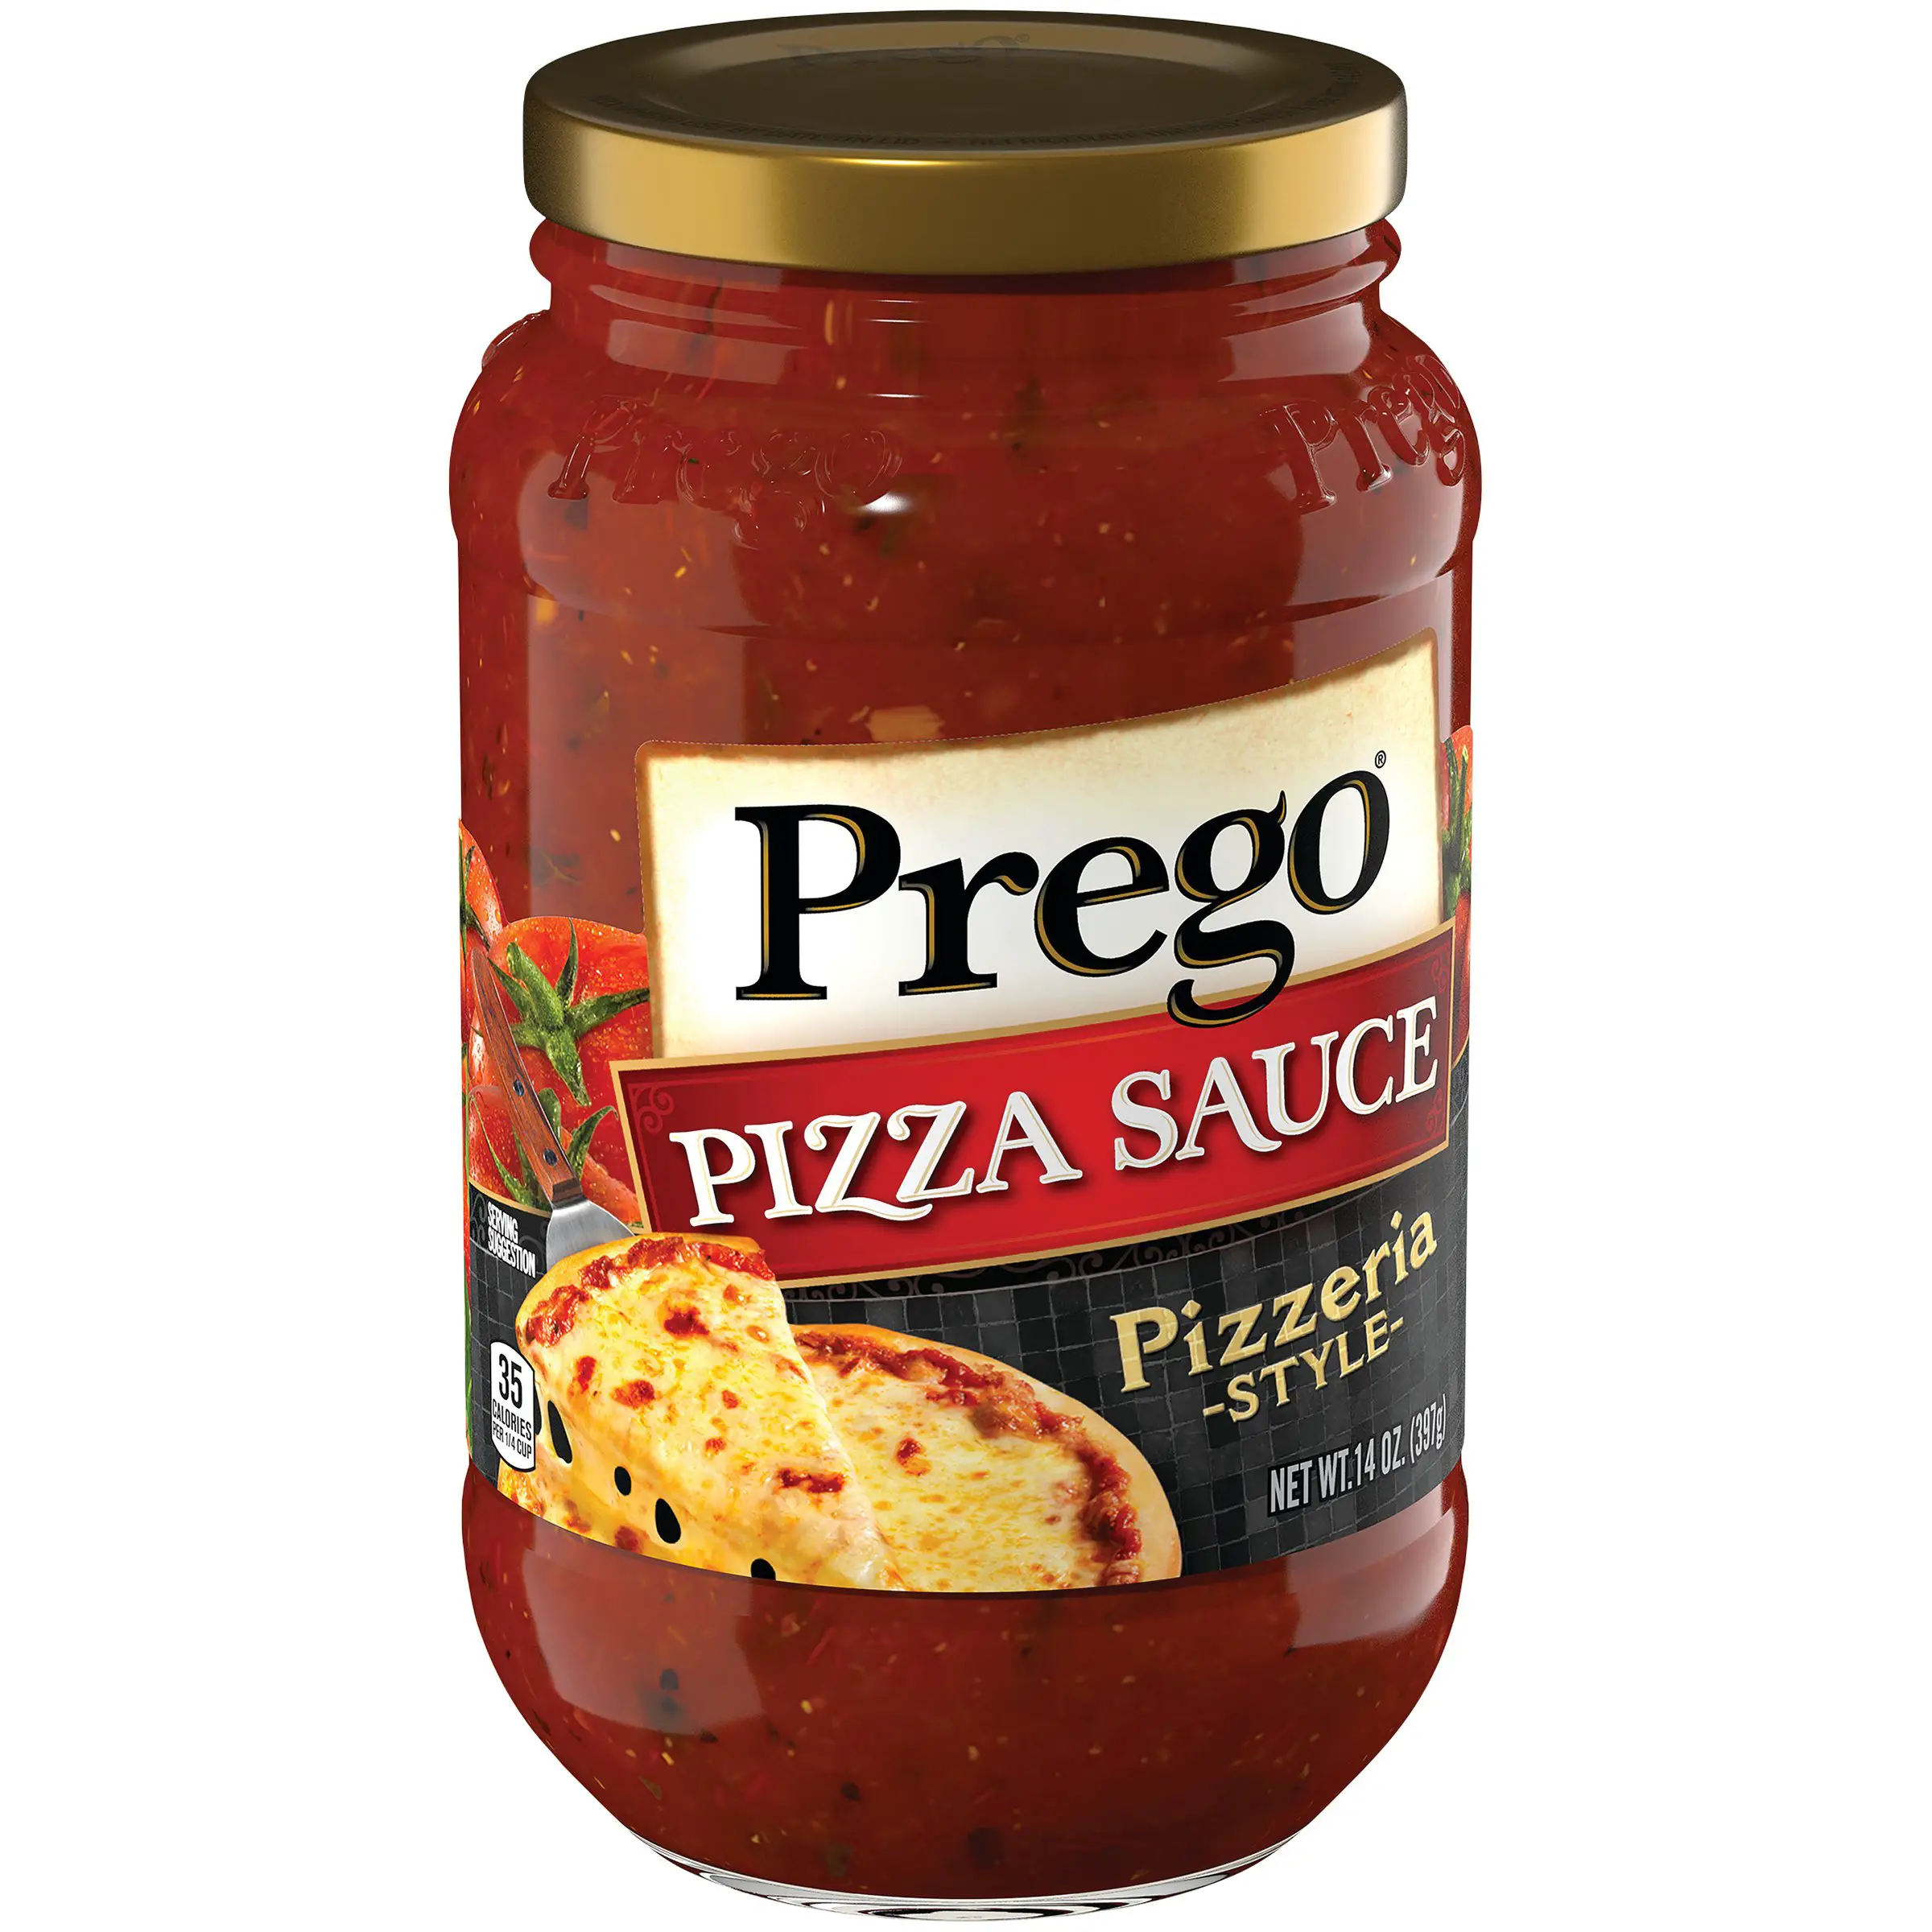 Prego® Pizza Sauce Pizzeria Style, 14 oz.